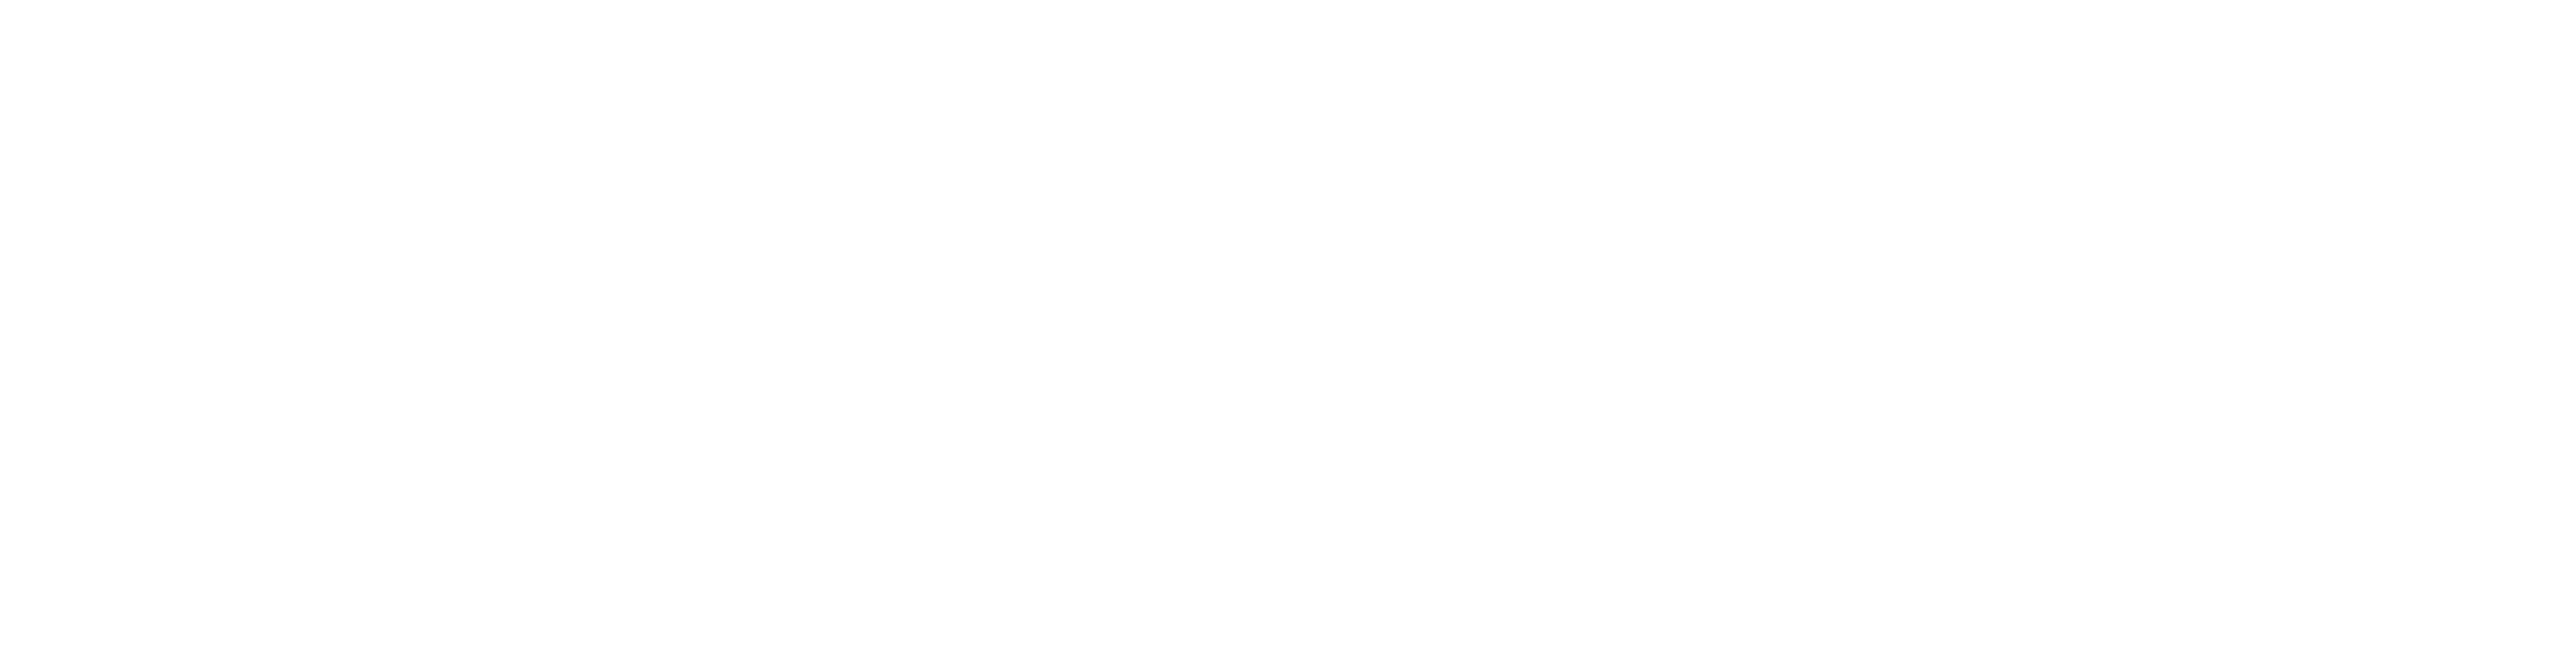 Webocean